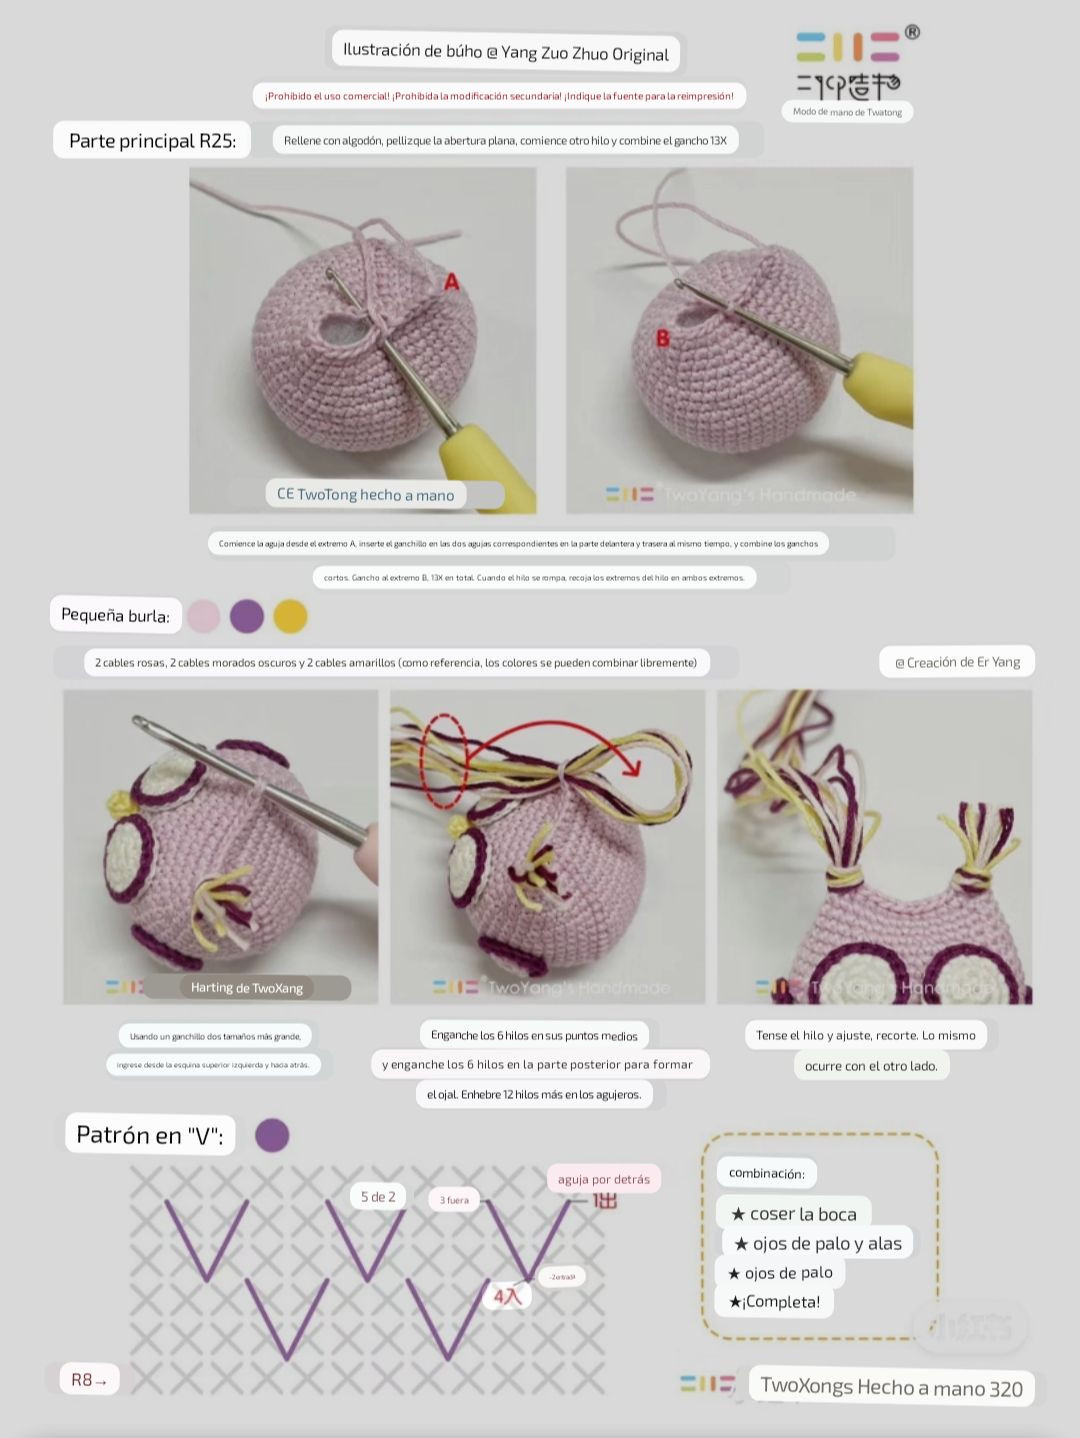 Pink, blue, purple, yellow owl, crochet pattern